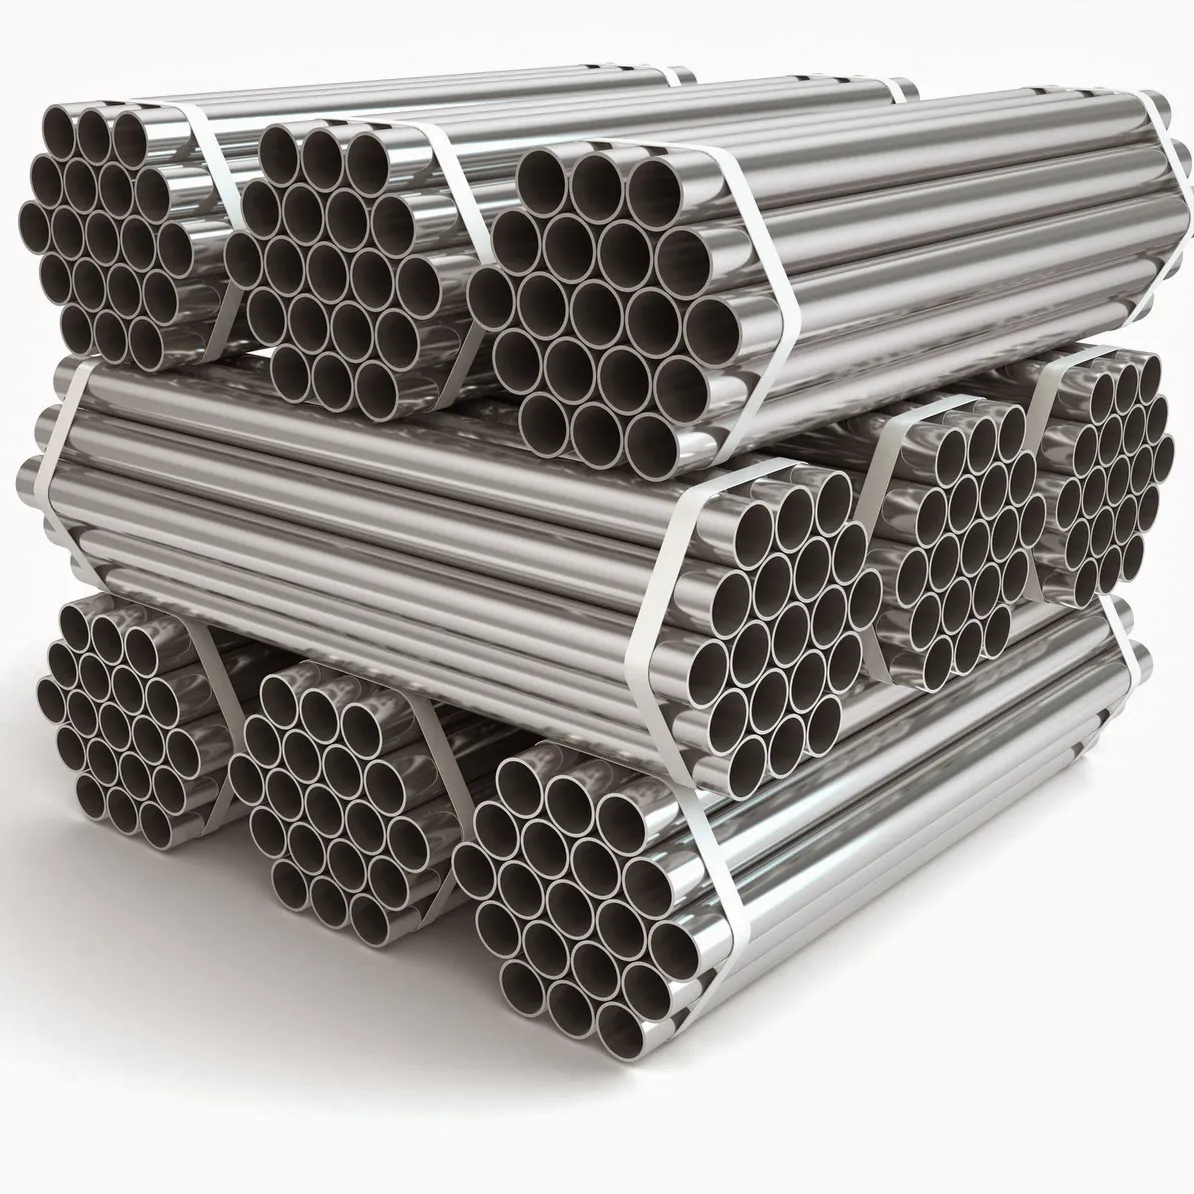 Vendita calda fabbrica 201 202 309 321 316 Ss tubo saldato in acciaio inossidabile miglior prezzo